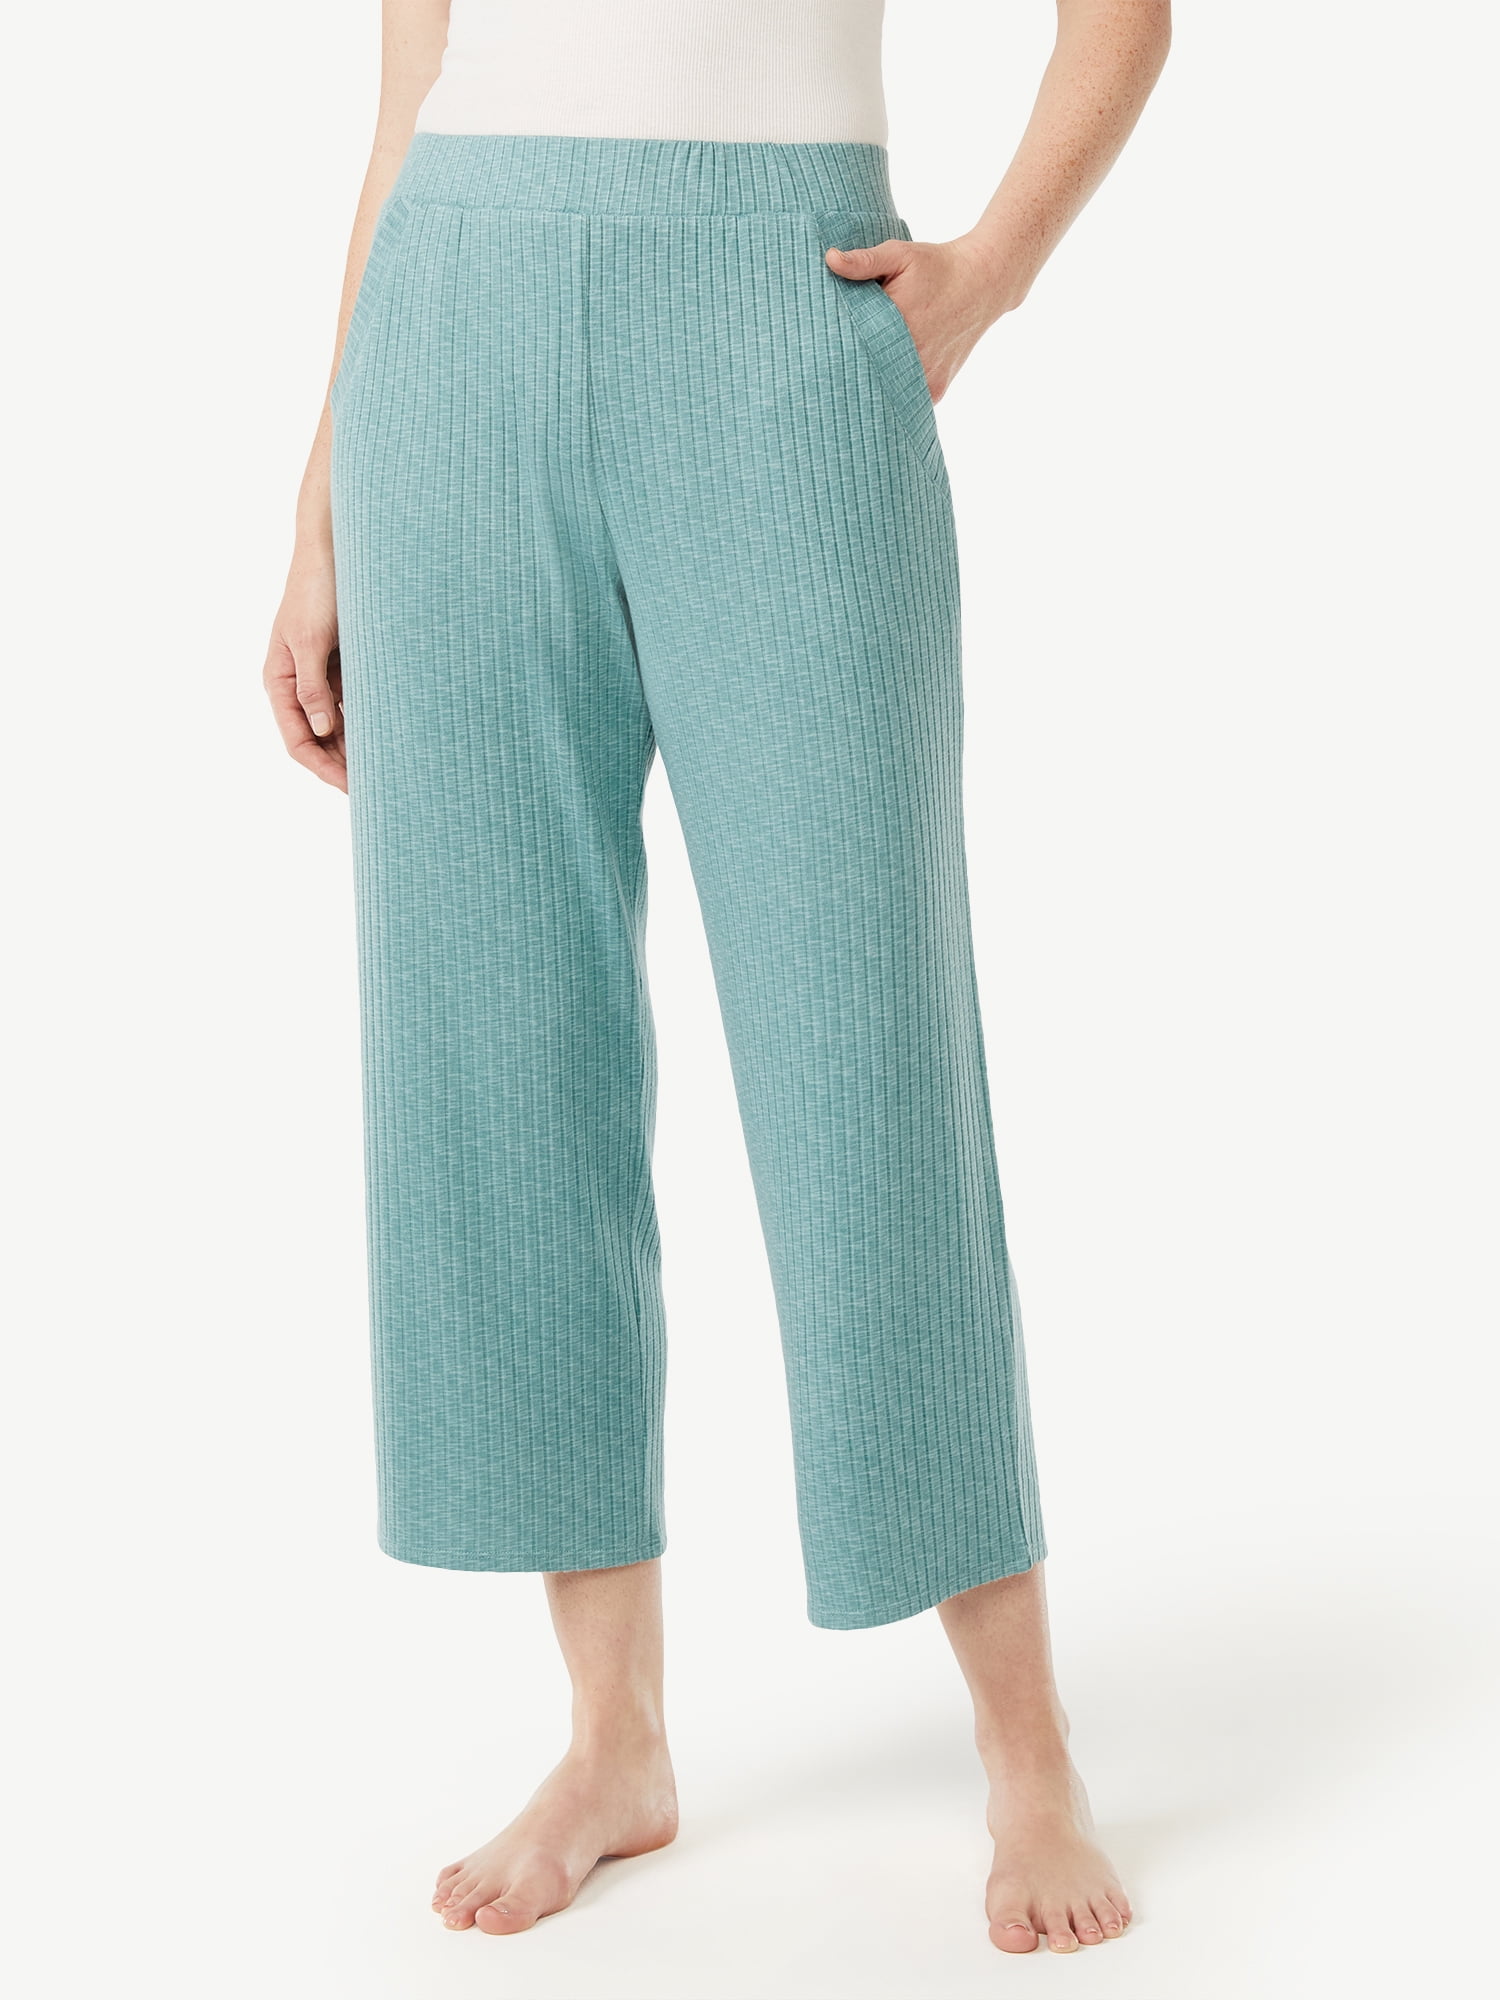 Joyspun Women's Hacci Knit Cropped Pants, Sizes S to 3X